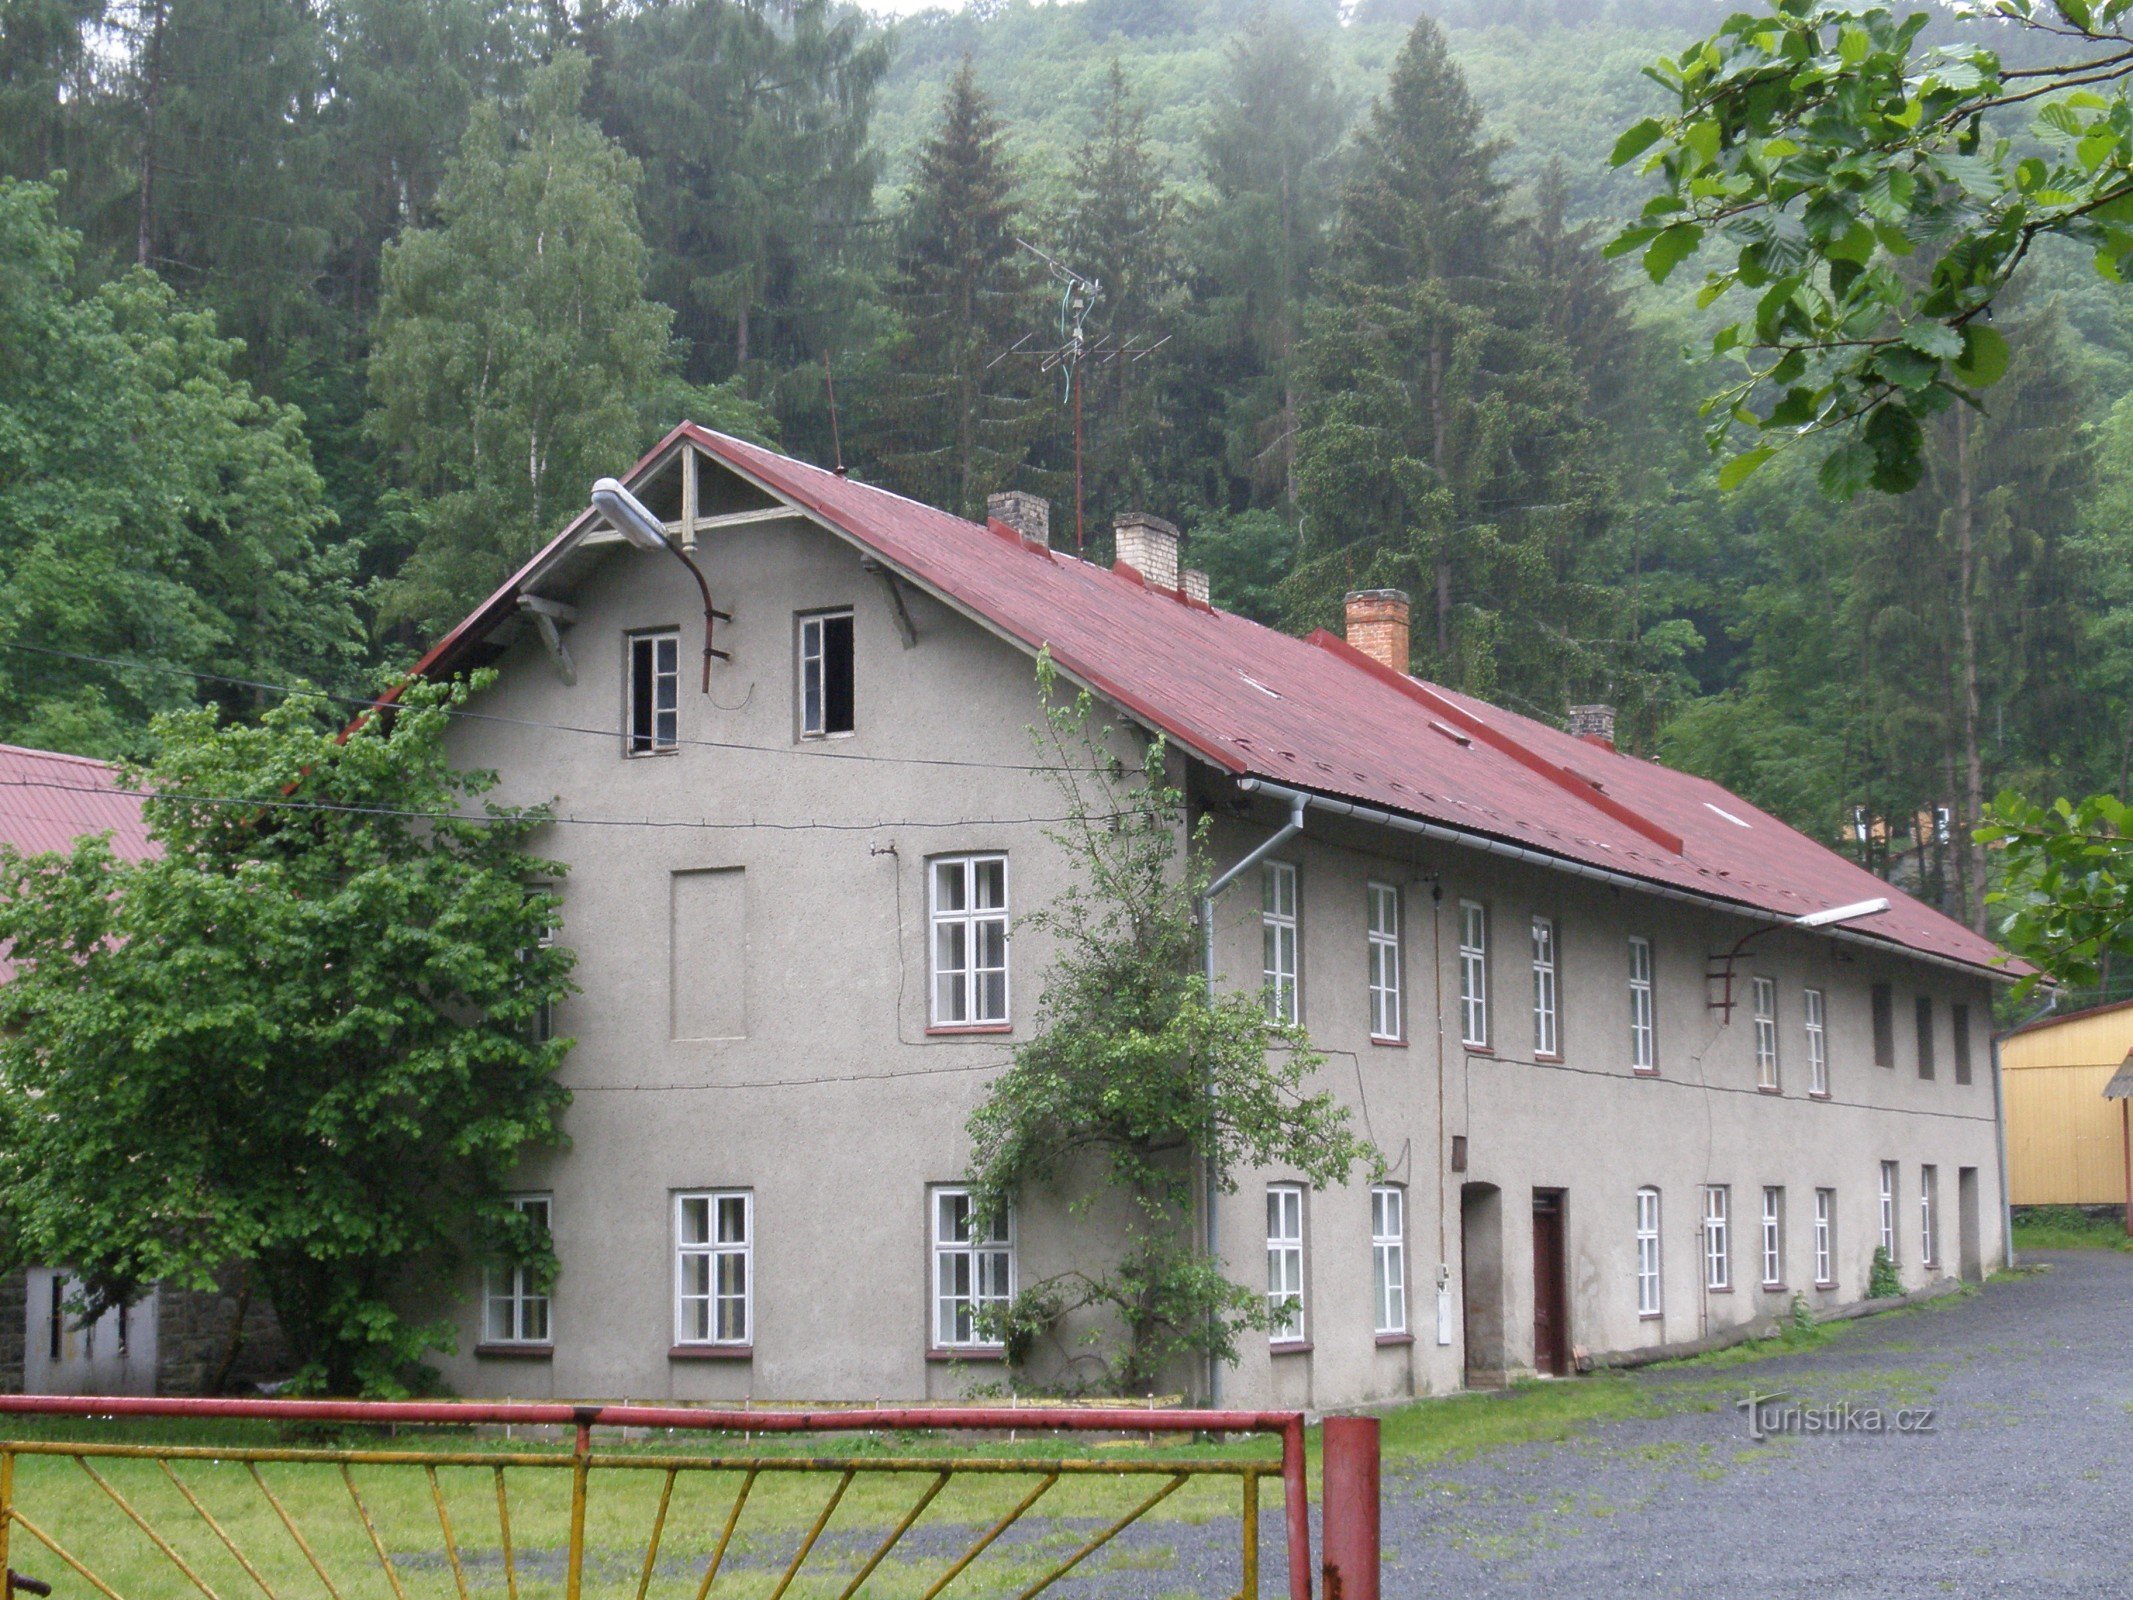 Spálov, Spálovský-Mühle, Odertal